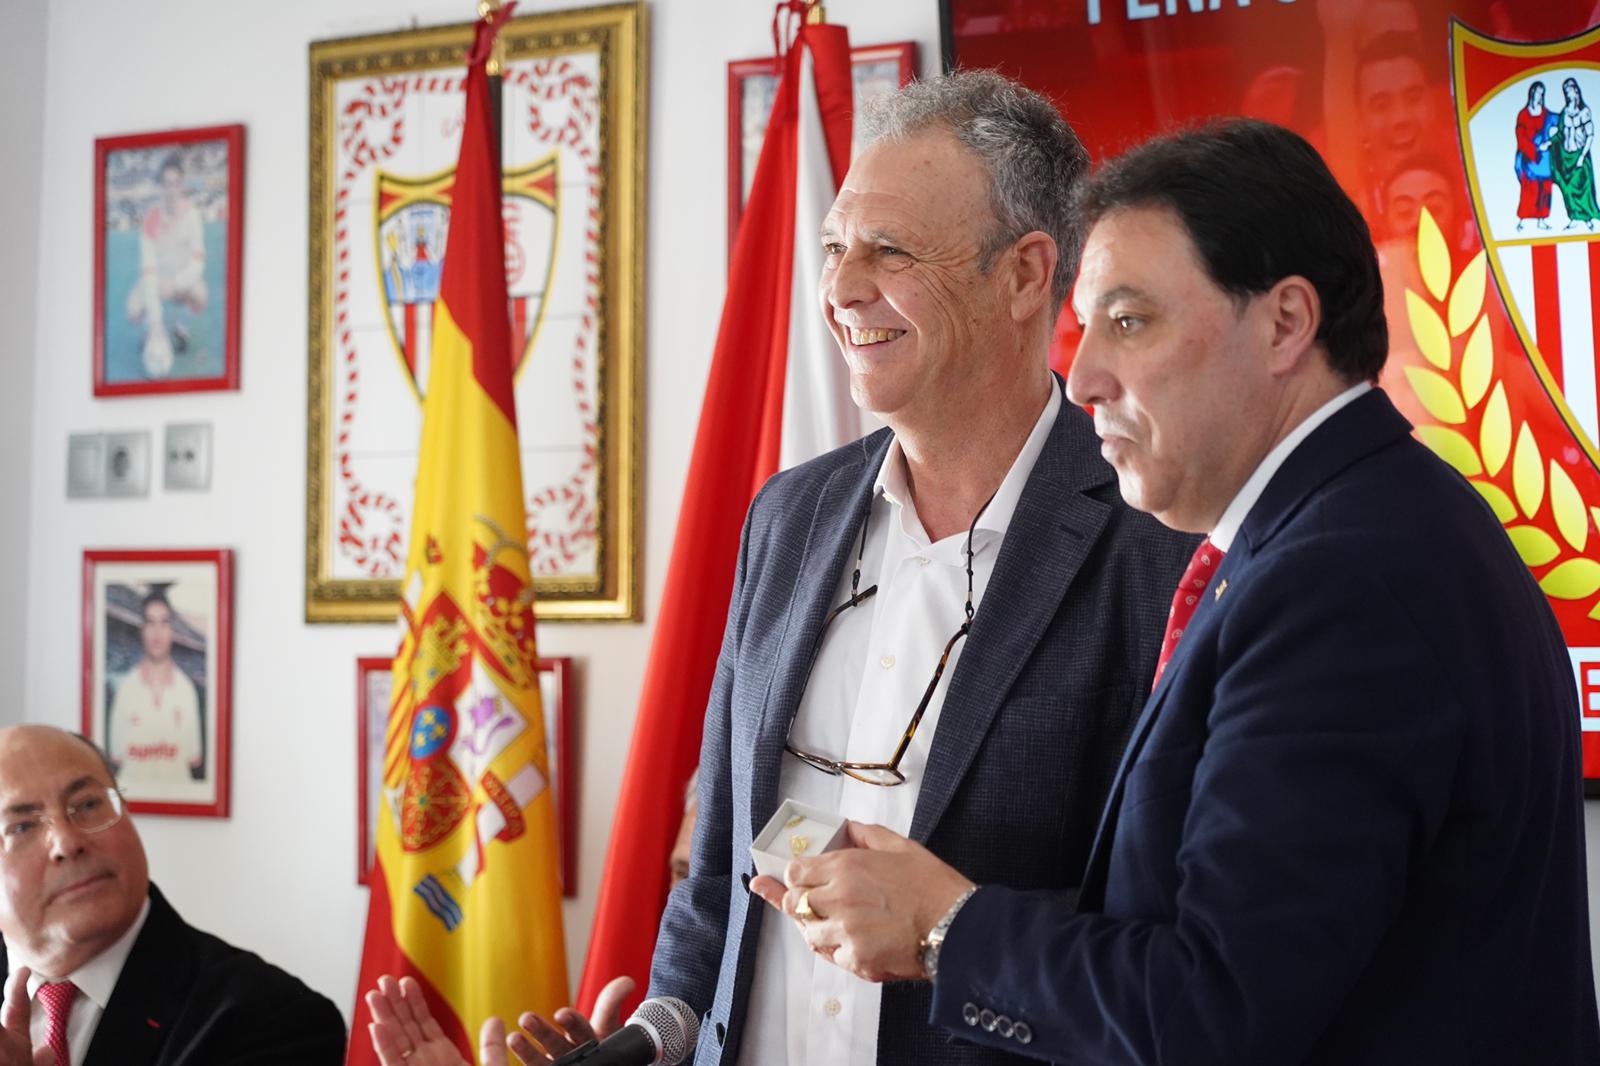 Joaquín Caparrós recibiendo la insignia de oro de la PS Dos Hermanas